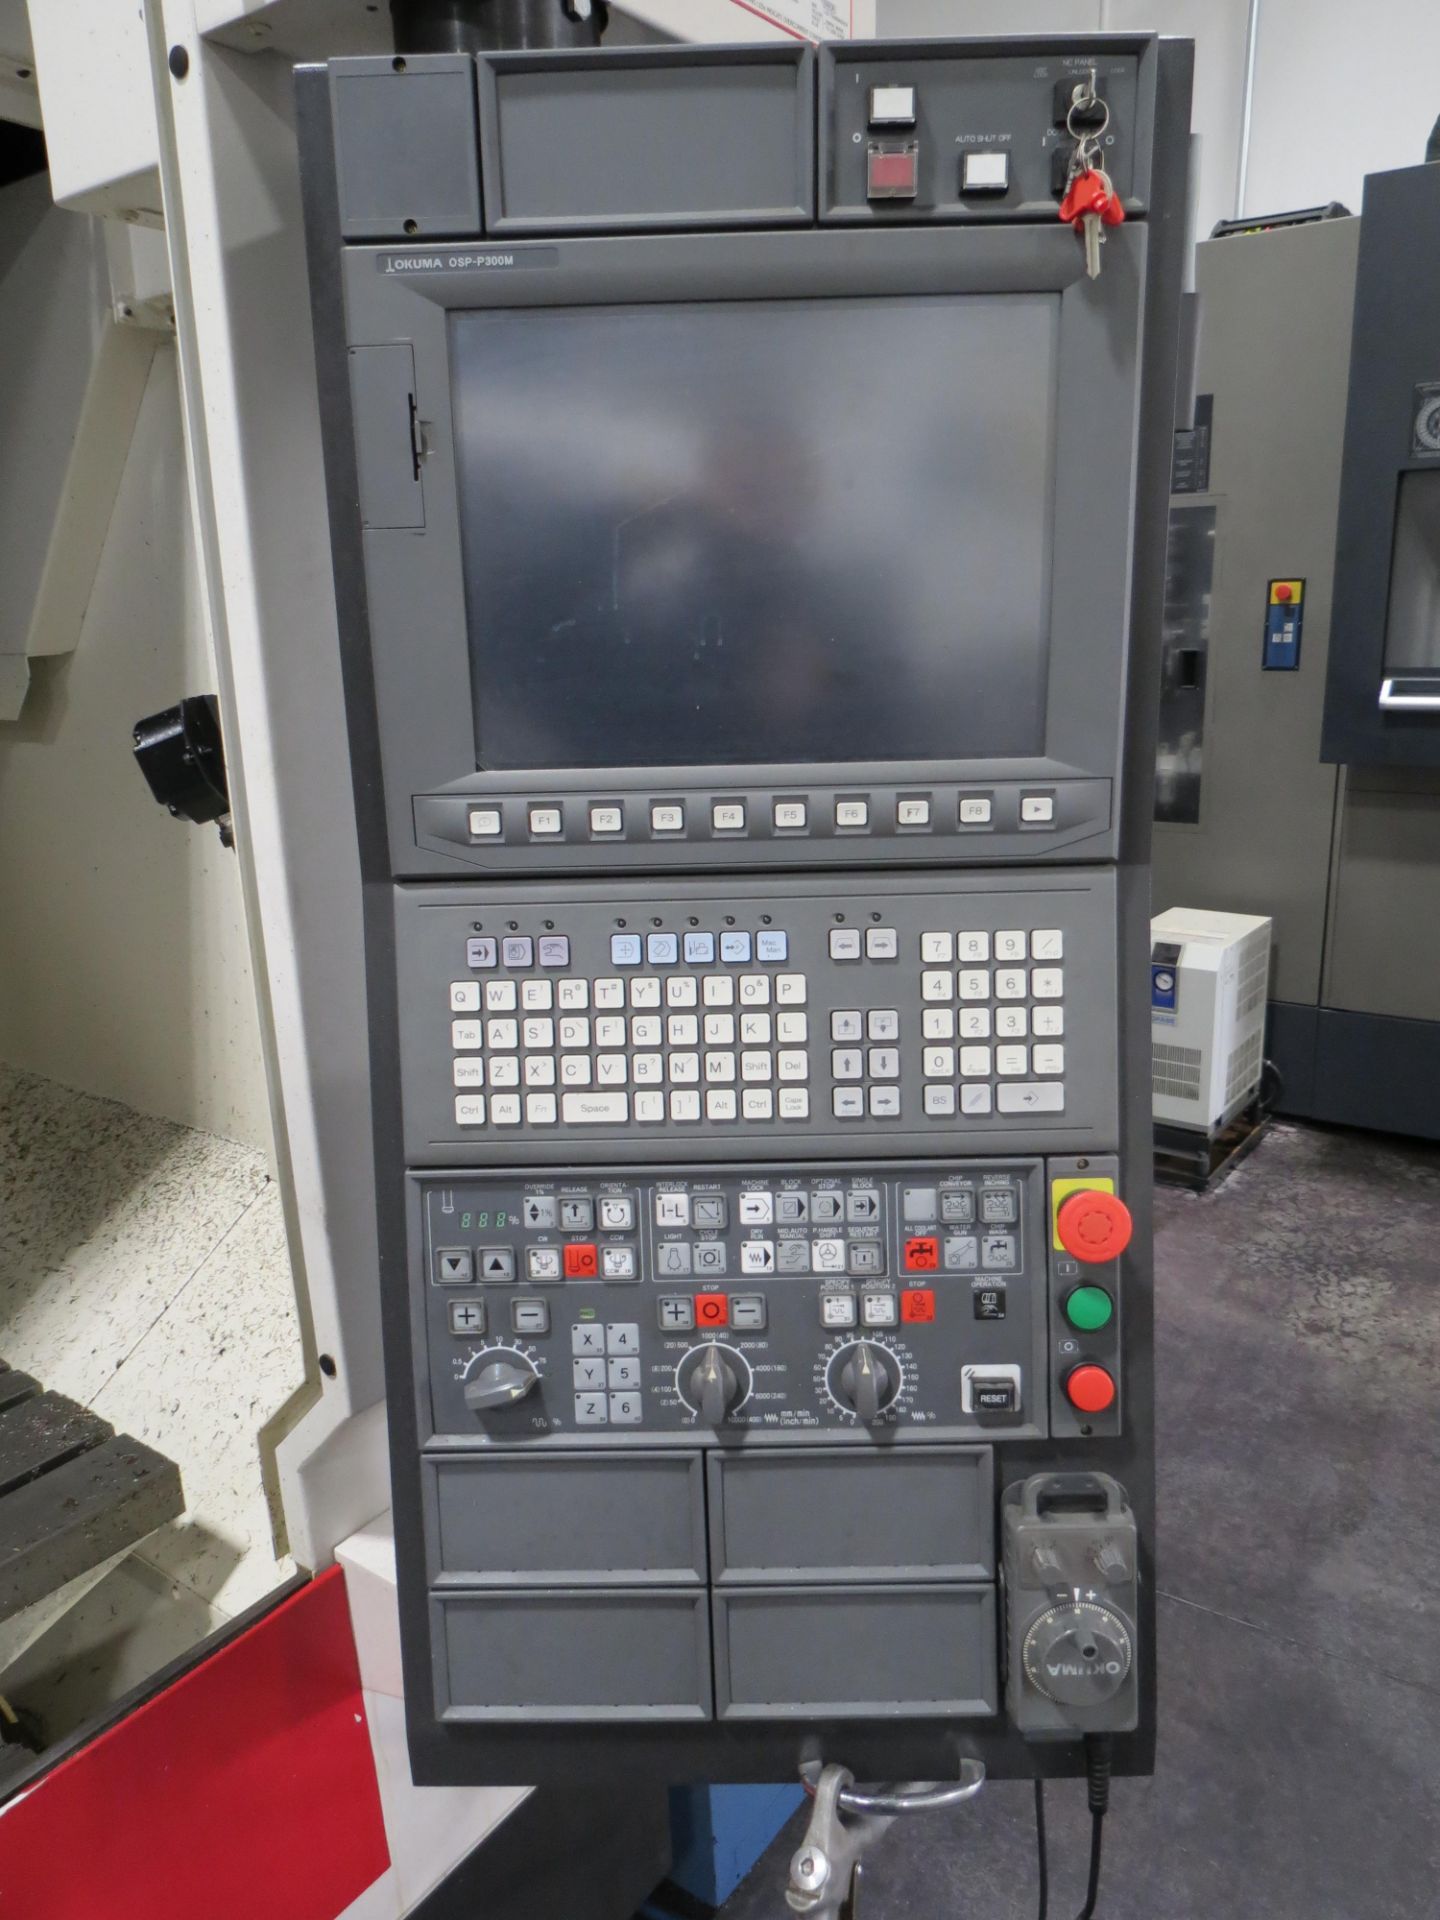 2014 OKUMA GENOS M560-V CNC VERTICAL MACHINING CENTER WITH OKUMA QSP-P300M CONTROL, SN: 179880, - Image 4 of 11